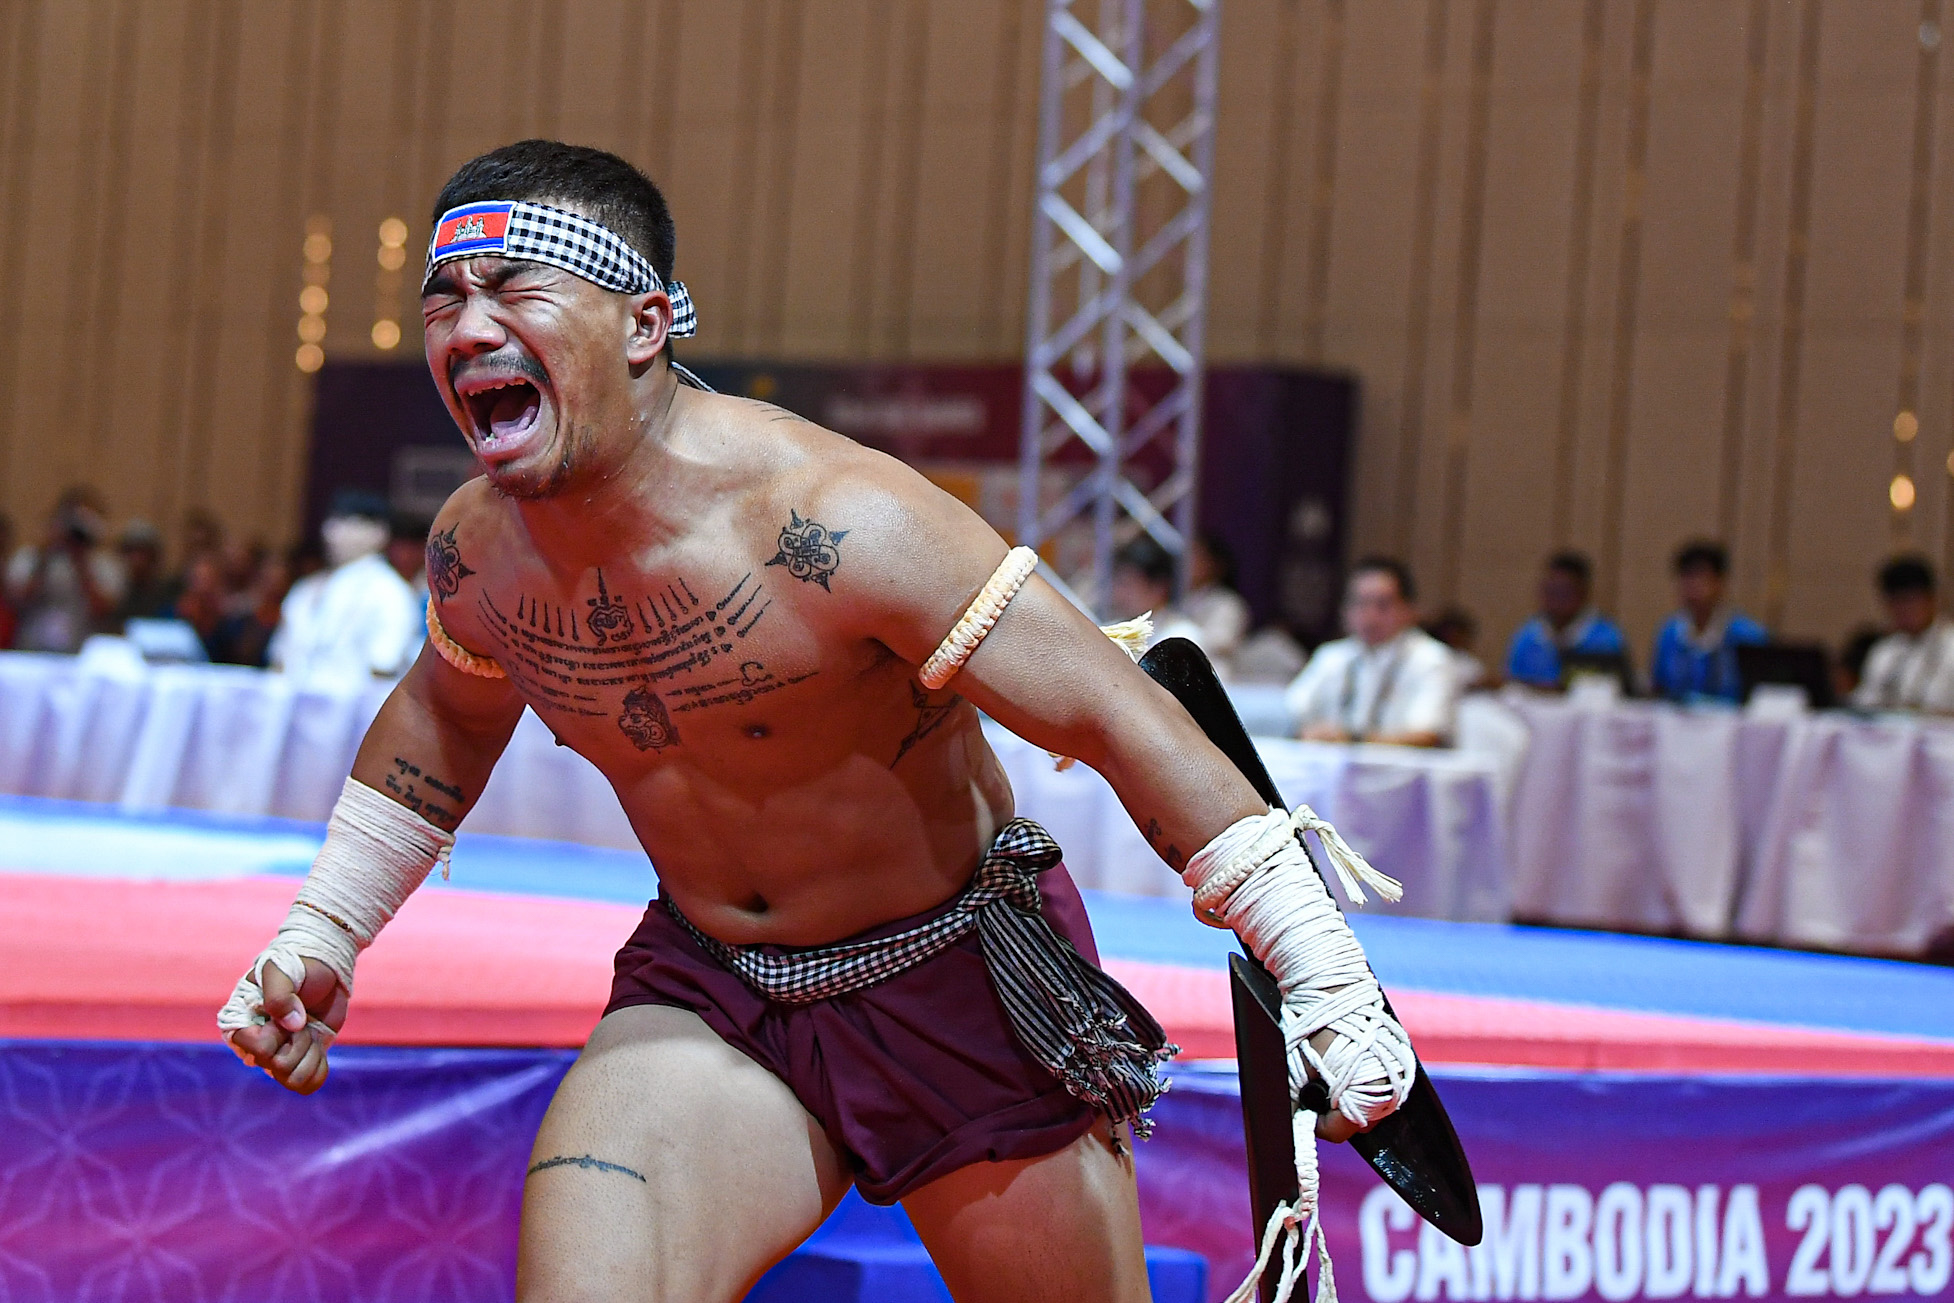 Võ sĩ Campuchia gào thét khi giành tấm huy chương vàng ở môn võ lạ - Ảnh 8.